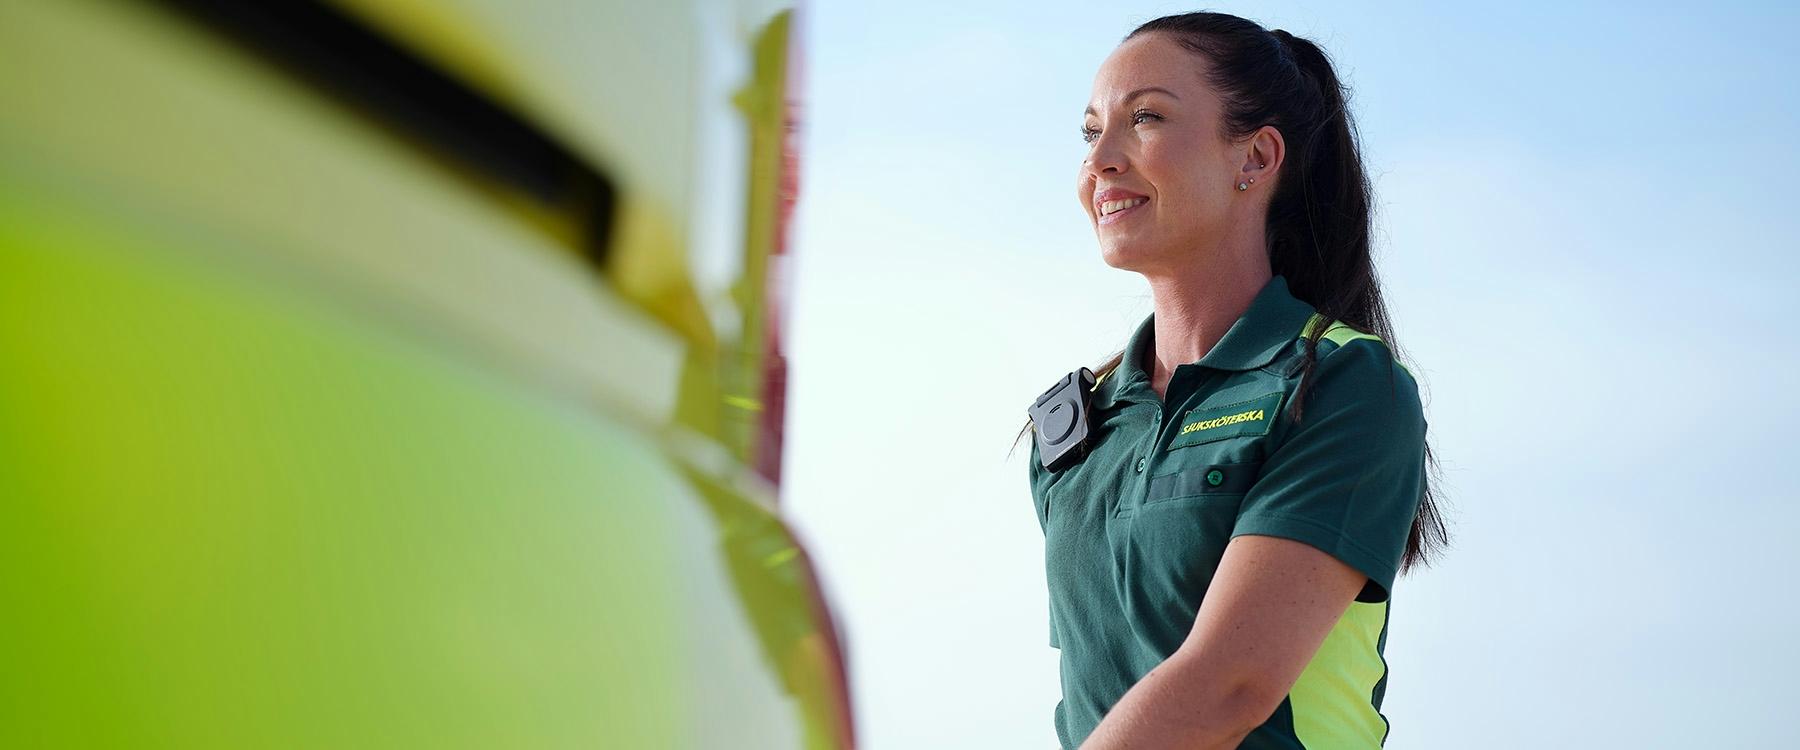 Ambulans-sjuksköterska i grön polotröja